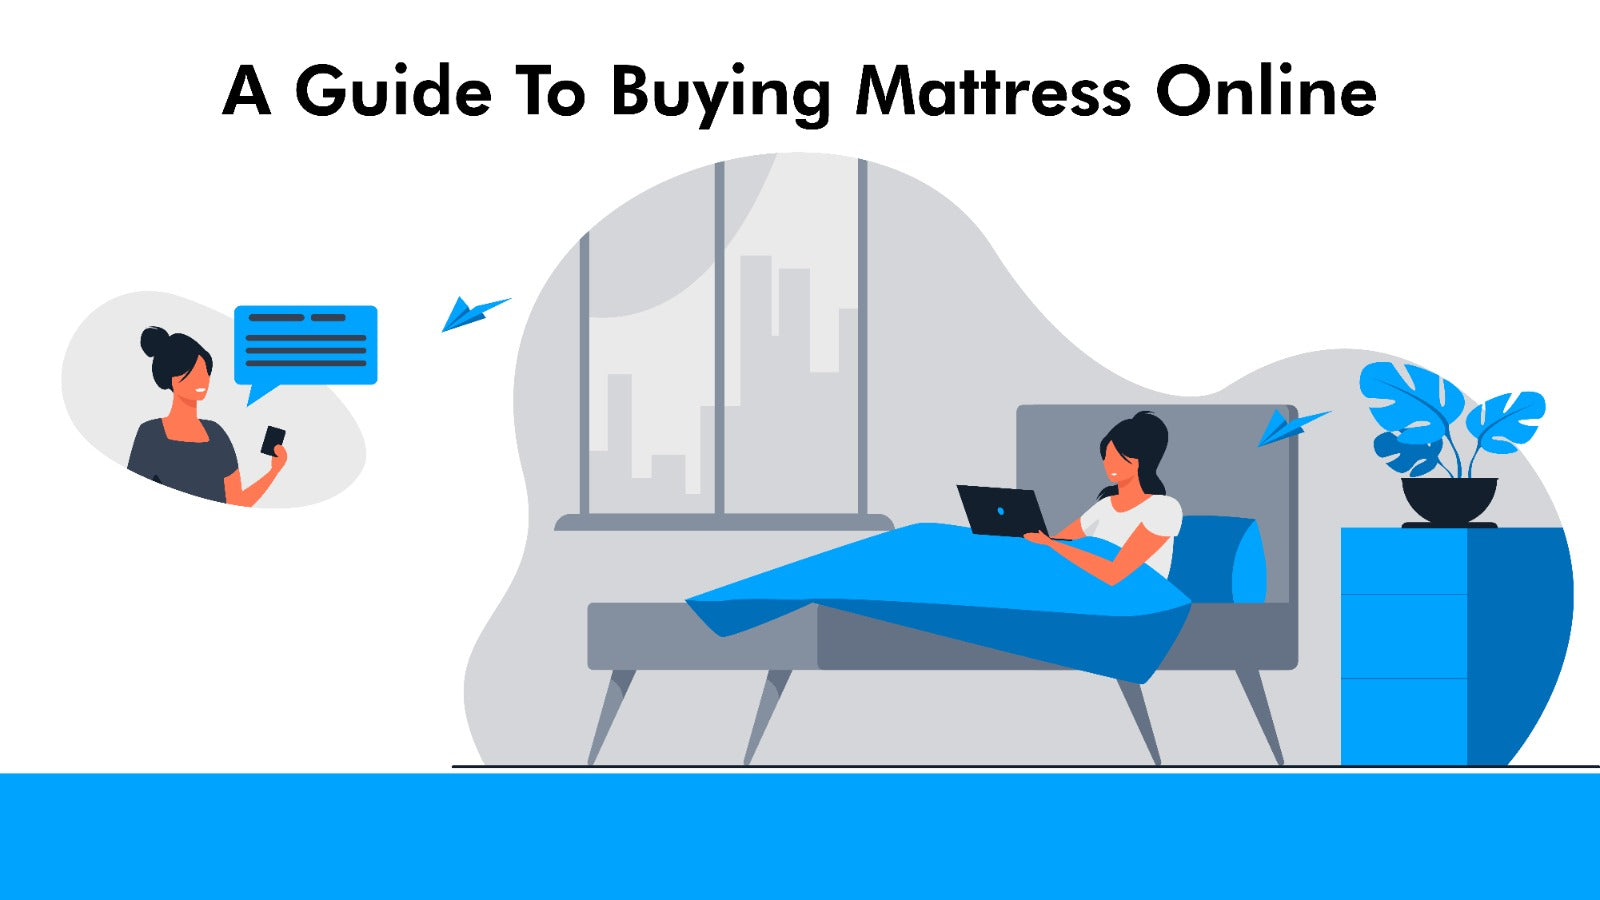 online mattress review fraud